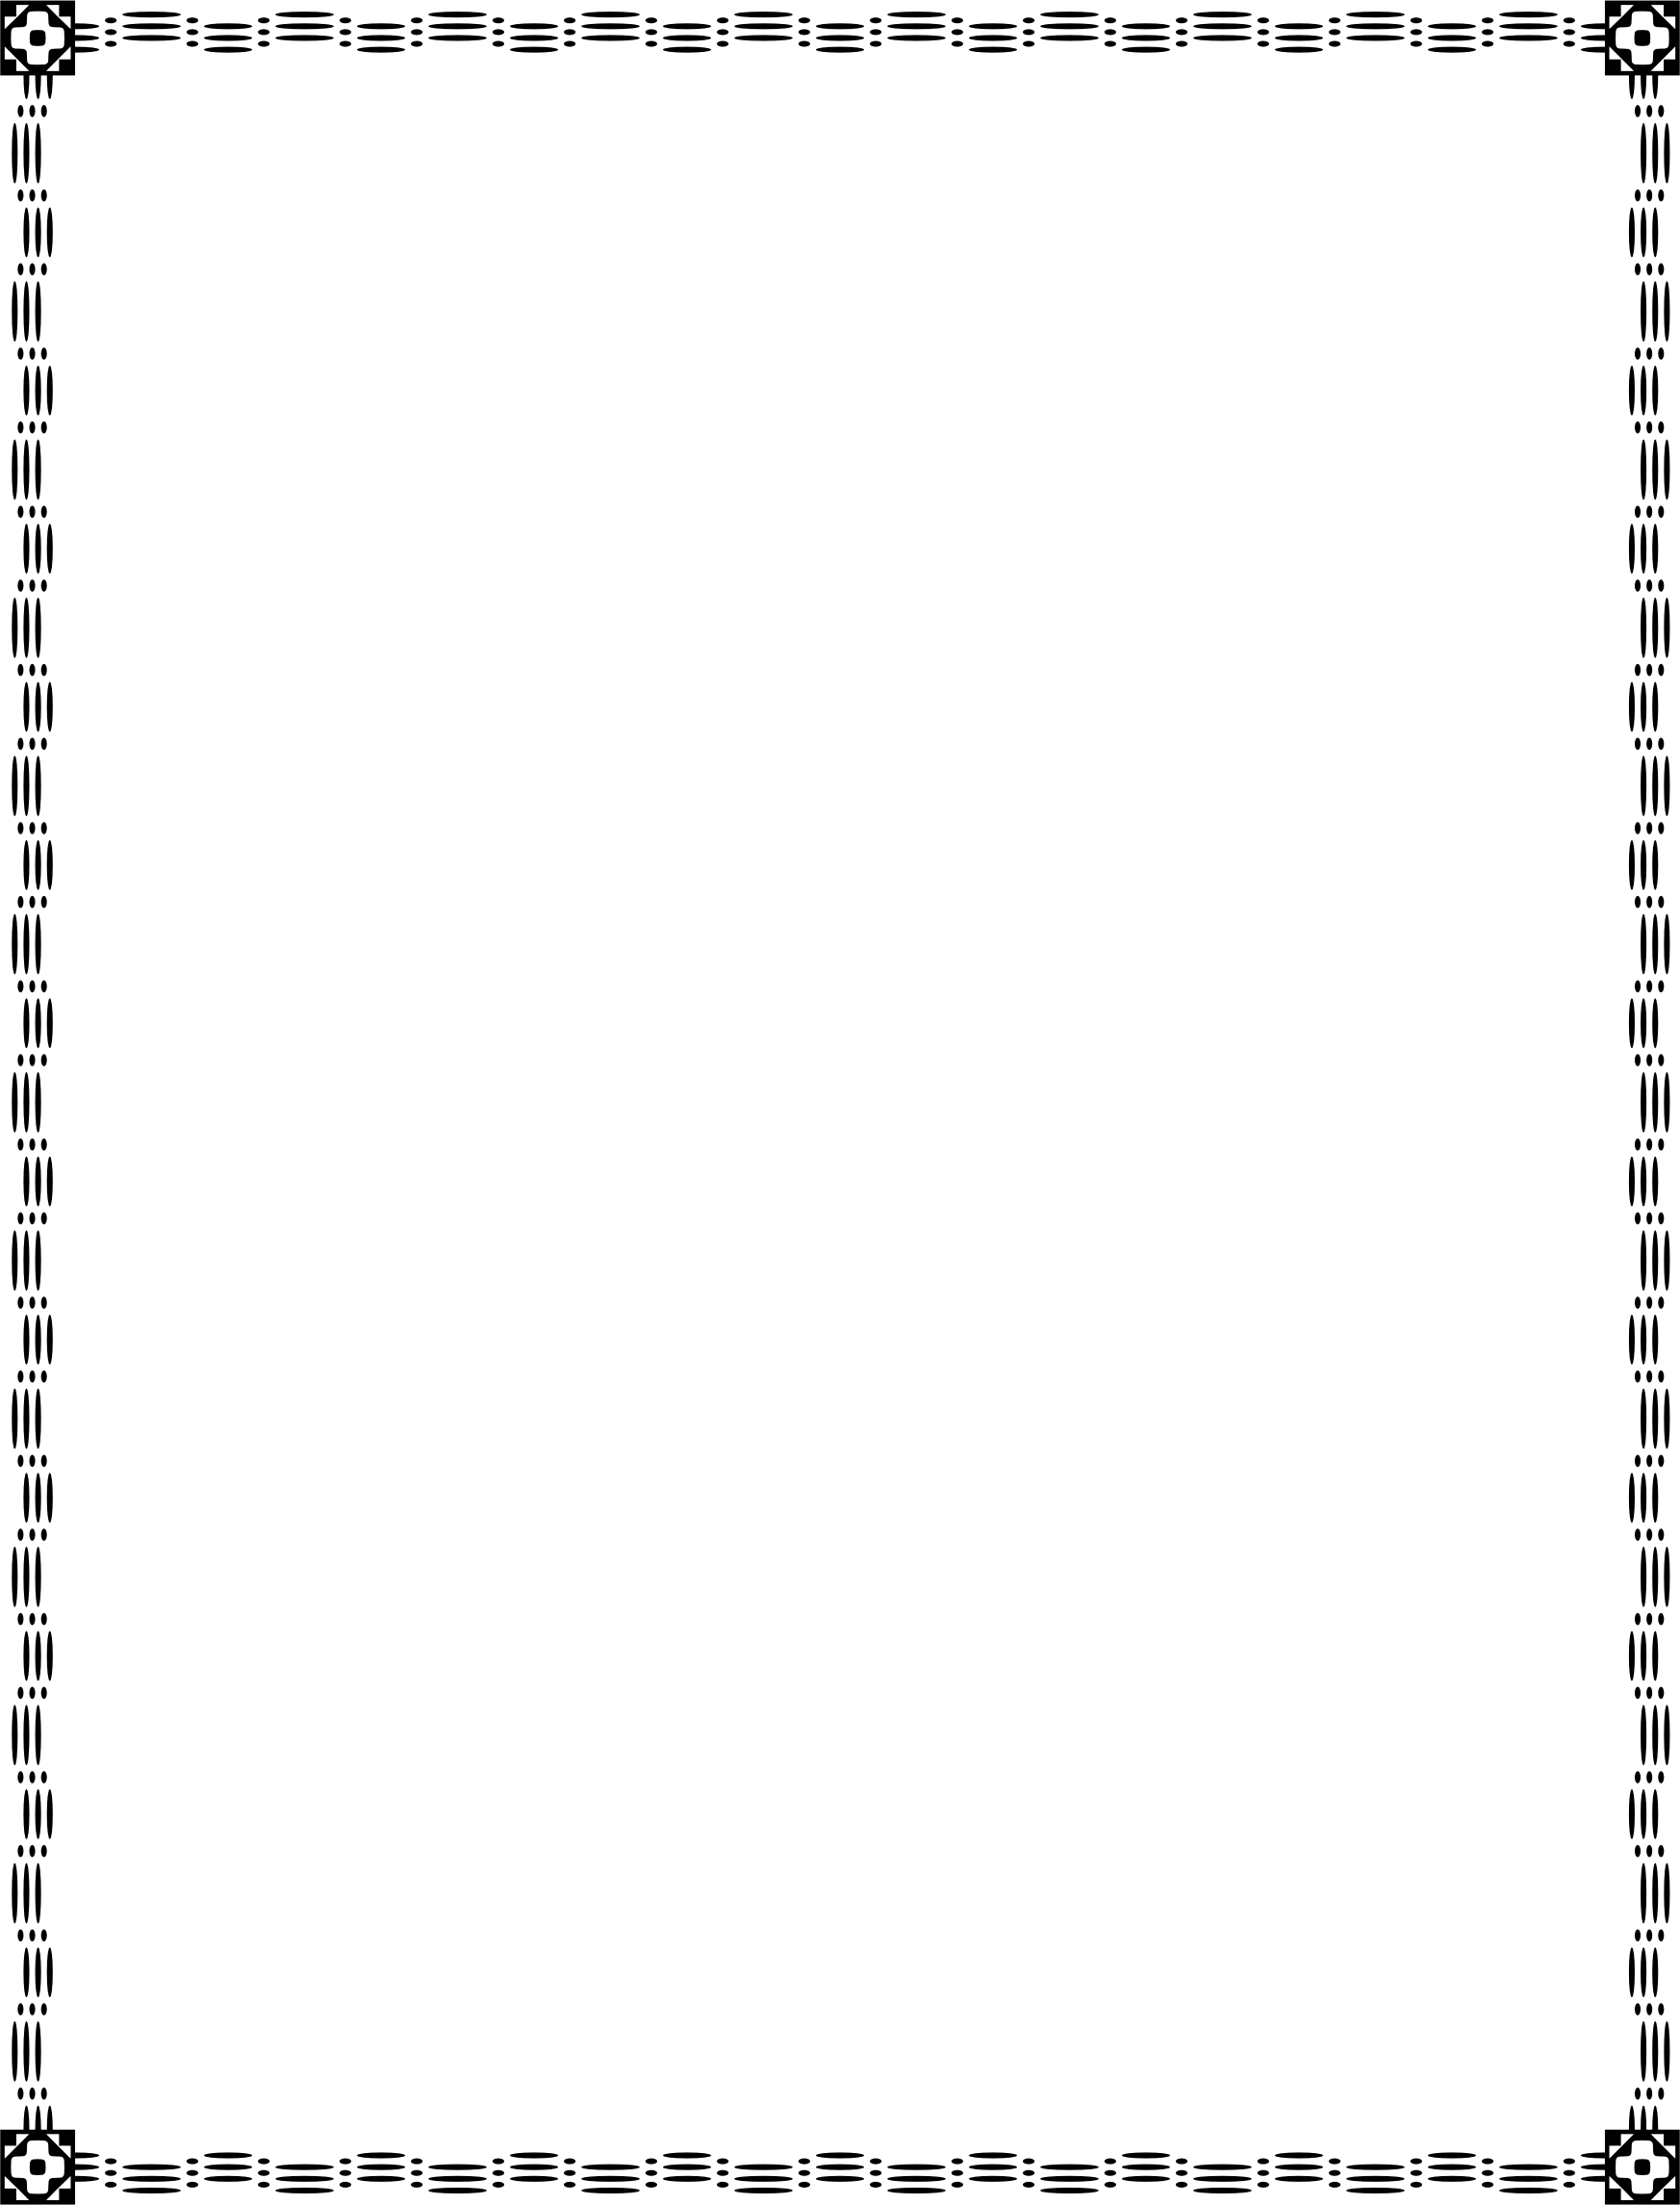 Immagine del PNG senza rettangolo del bordo nero